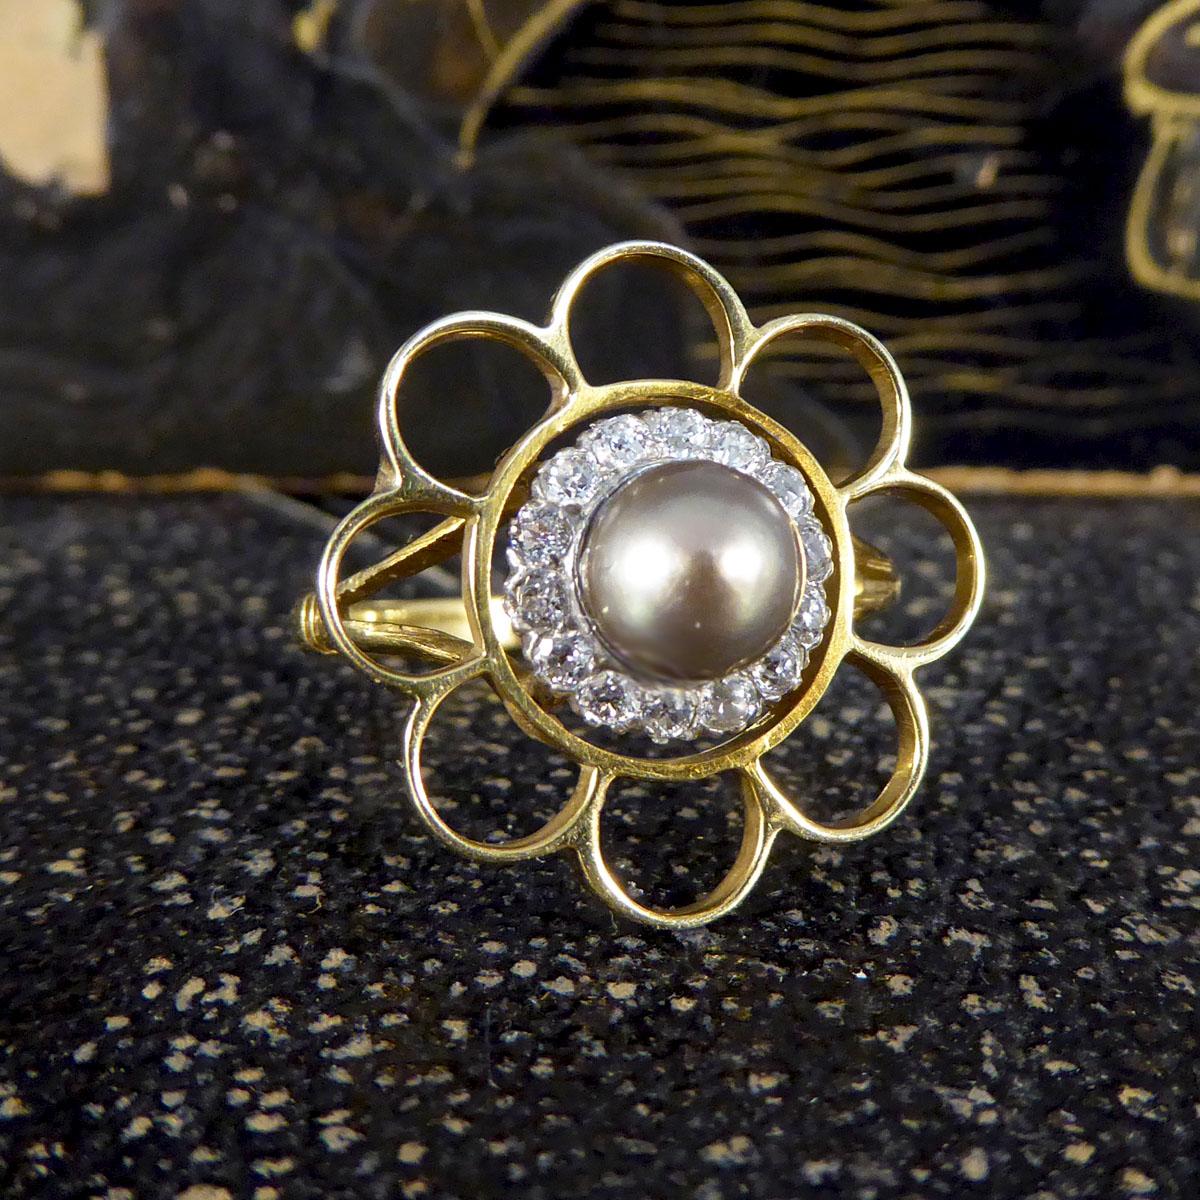 Dieser Ring zeigt eine schimmernde graue Perle in der Mitte mit einer Einfassung von ca. 0,40ct Old European Cut Diamanten aus der Edwardianischen Ära, die von einer Nadel zu einem Ring umgewandelt worden zu sein scheint. Um den antiken Cluster